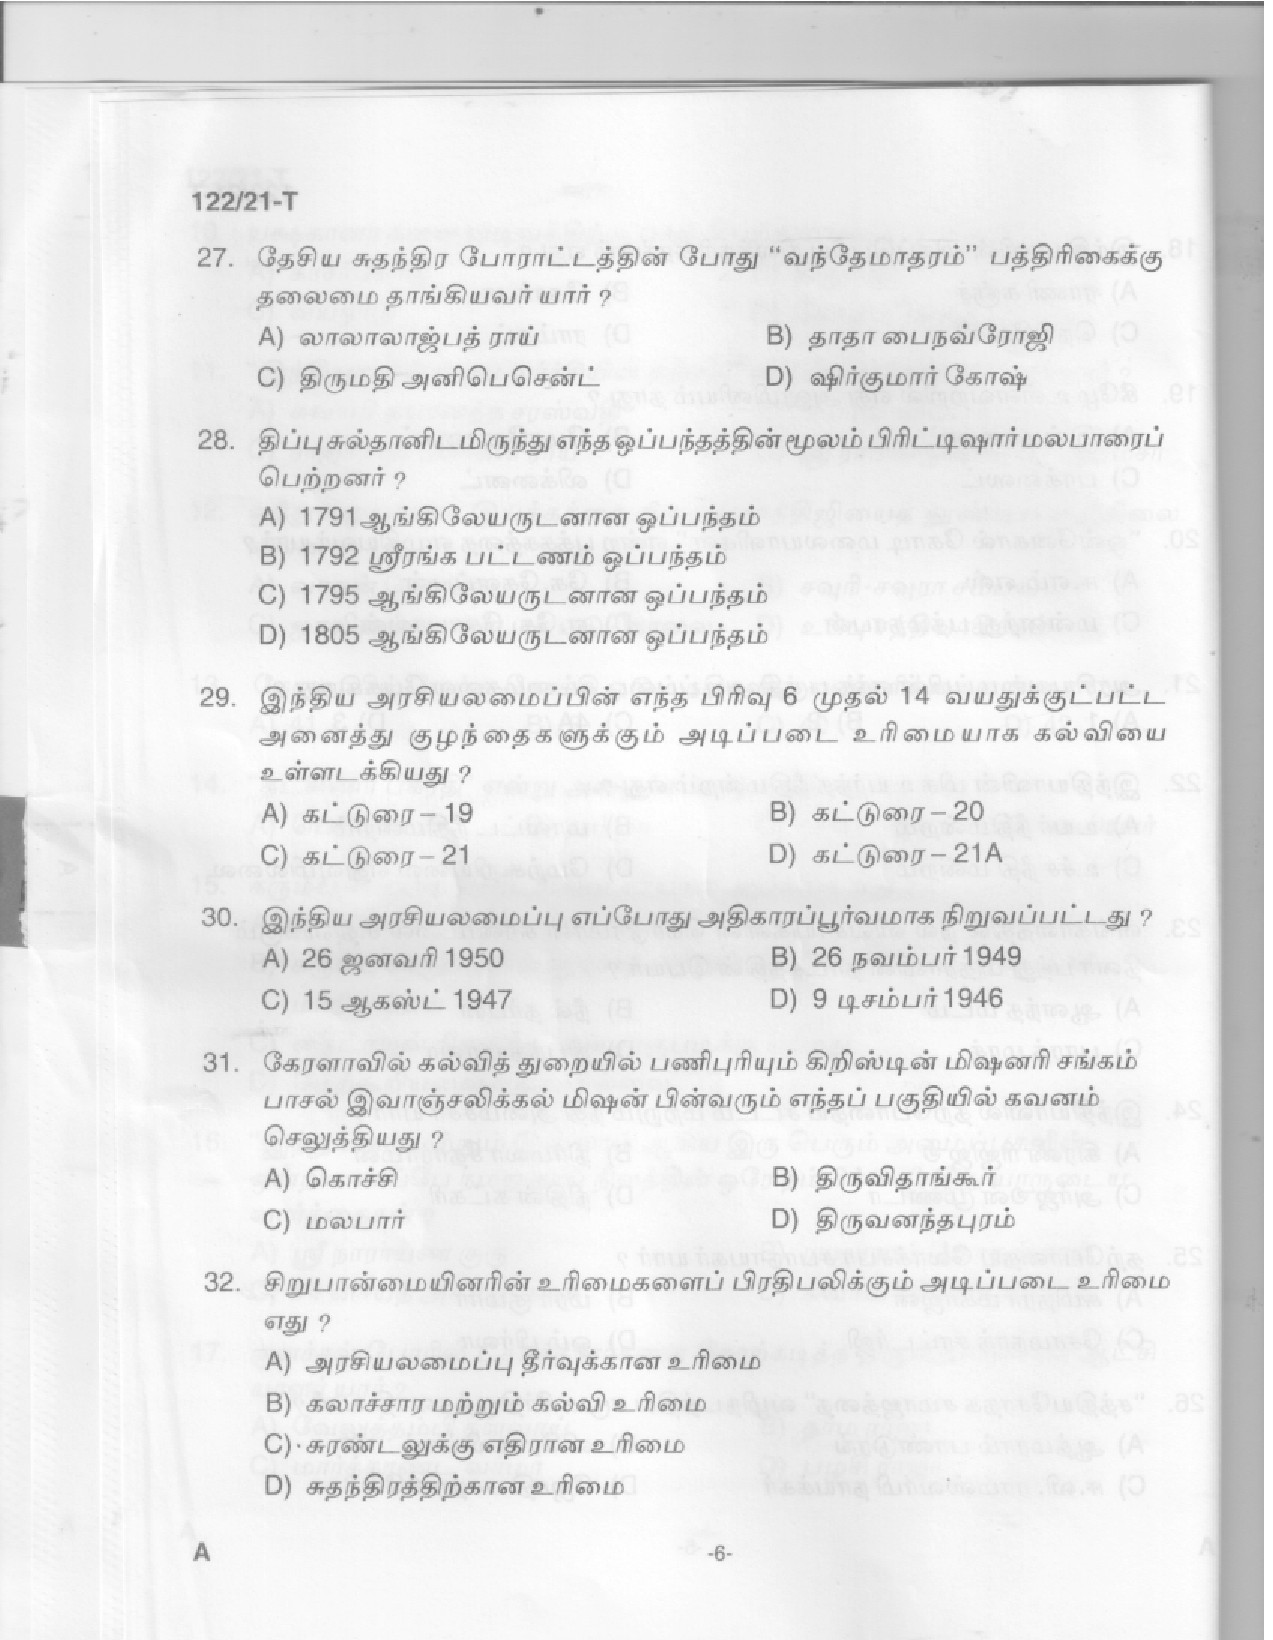 KPSC Upto SSLC Level Main Examination LGS Tamil Exam 2021 Code 1222021 T 4